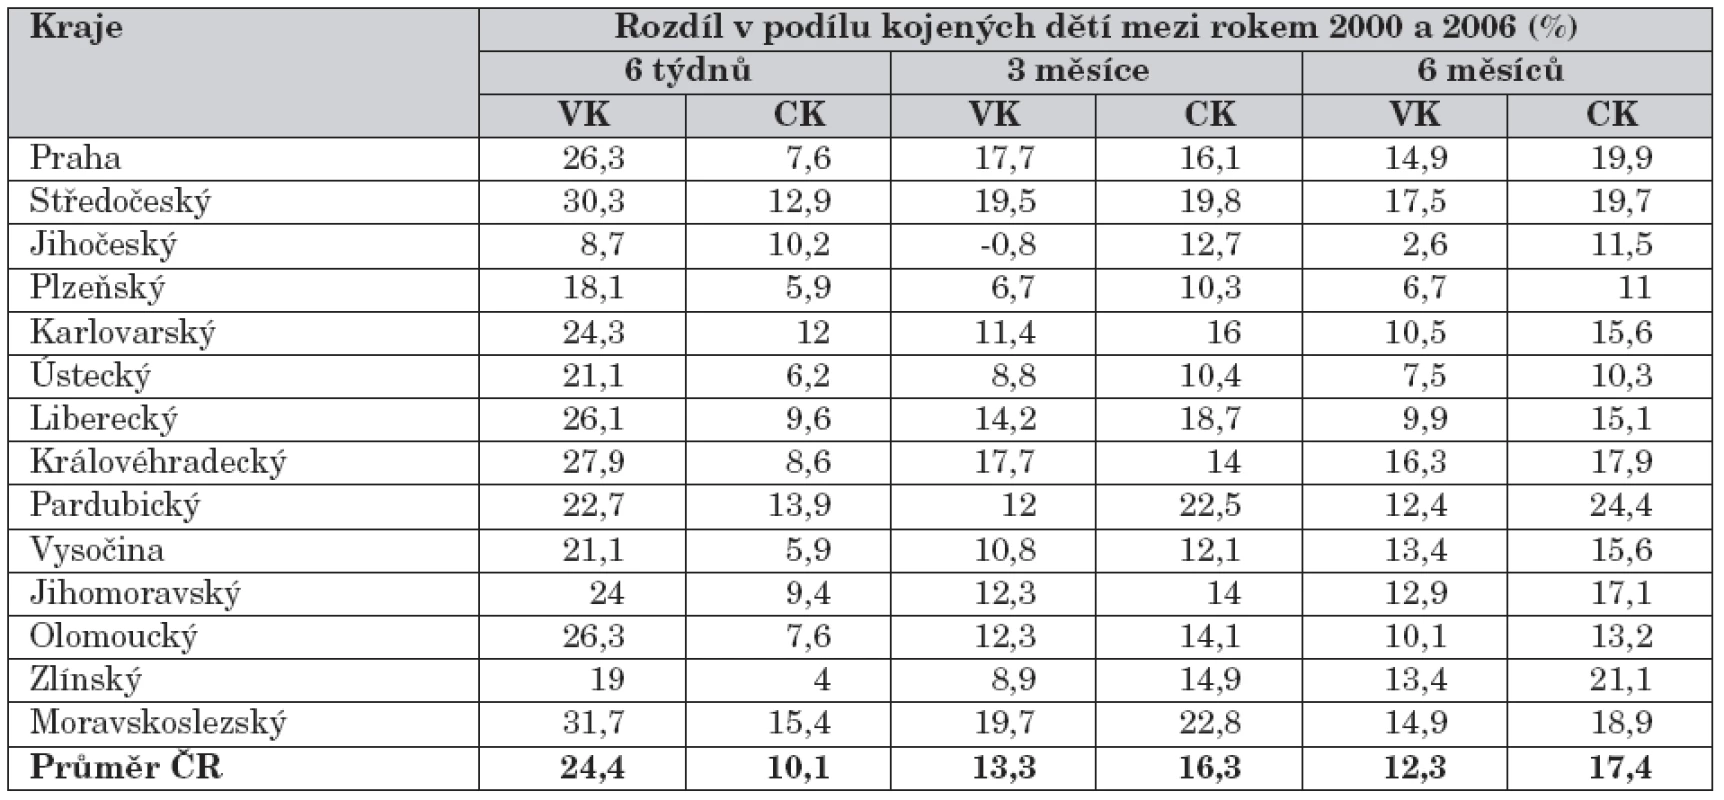 Rozdíl mezi podílem kojených dětí mezi rokem 2000 a 2006 (%) mezi jednotlivými regiony ČR.
VK – výlučné kojení. CK – celkové kojení.